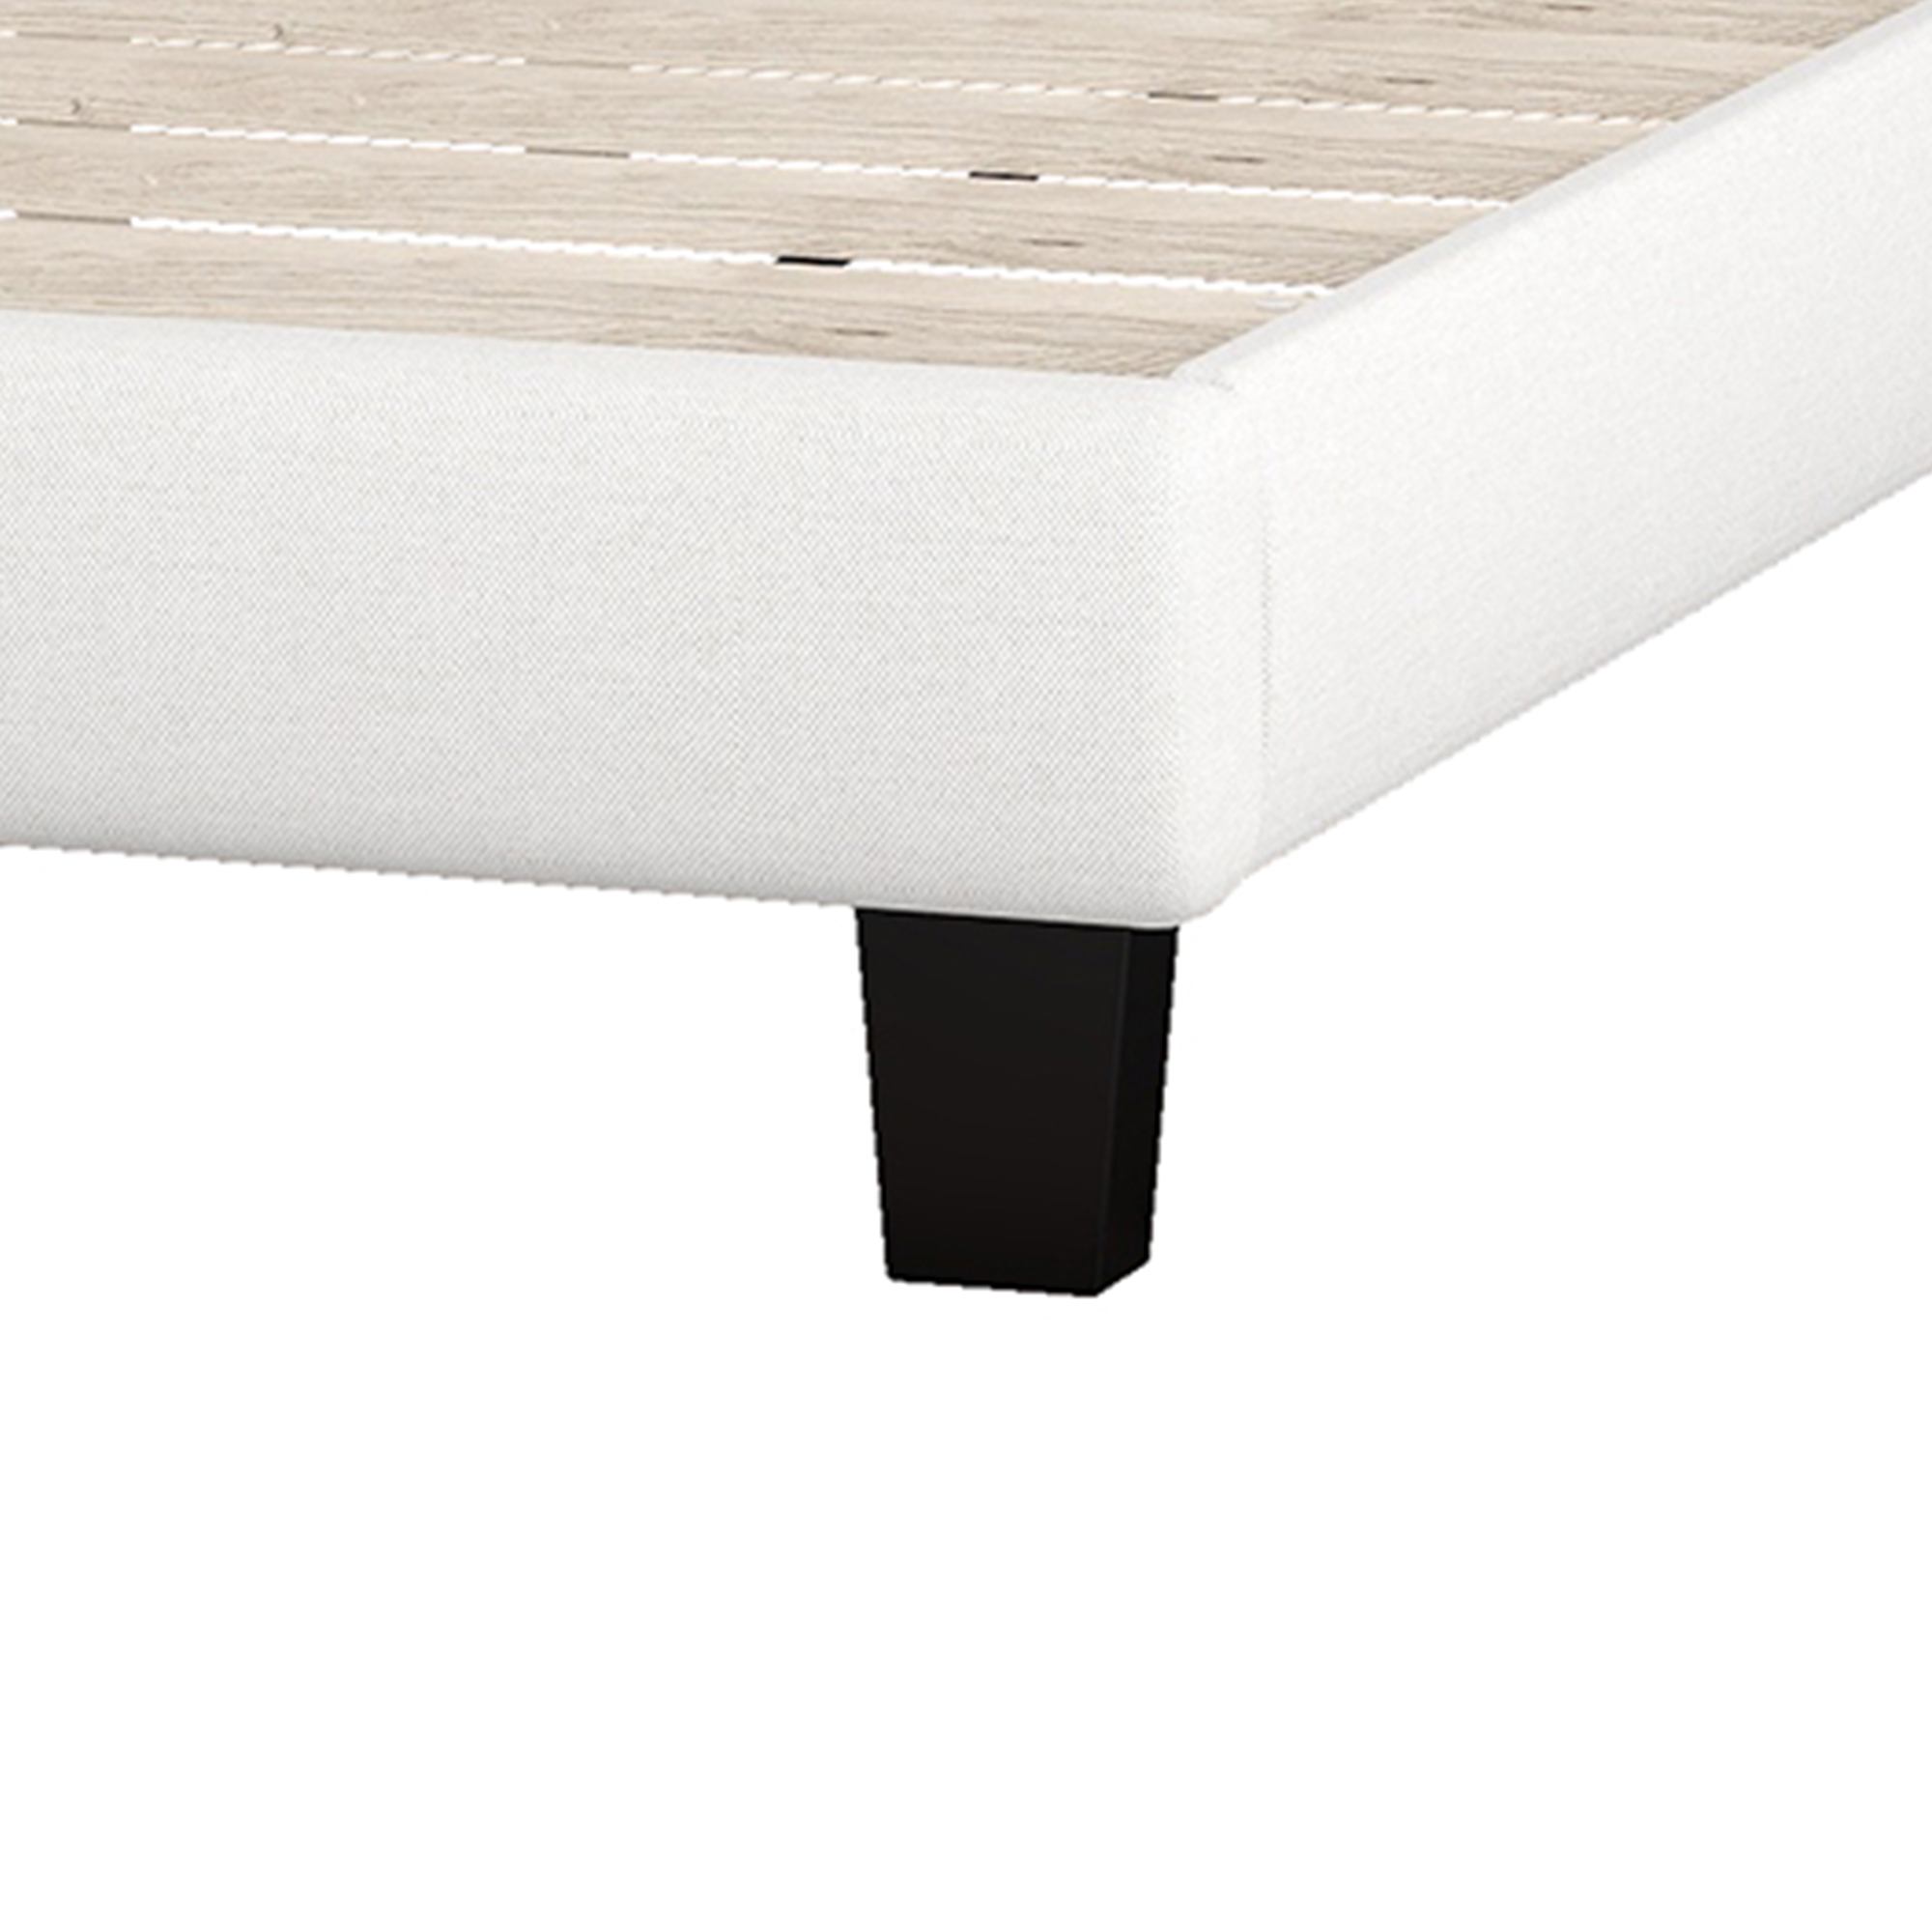 Elegant Upholstered Curved Tufted Linen Platform Bed, Full Size - WF294418AAA